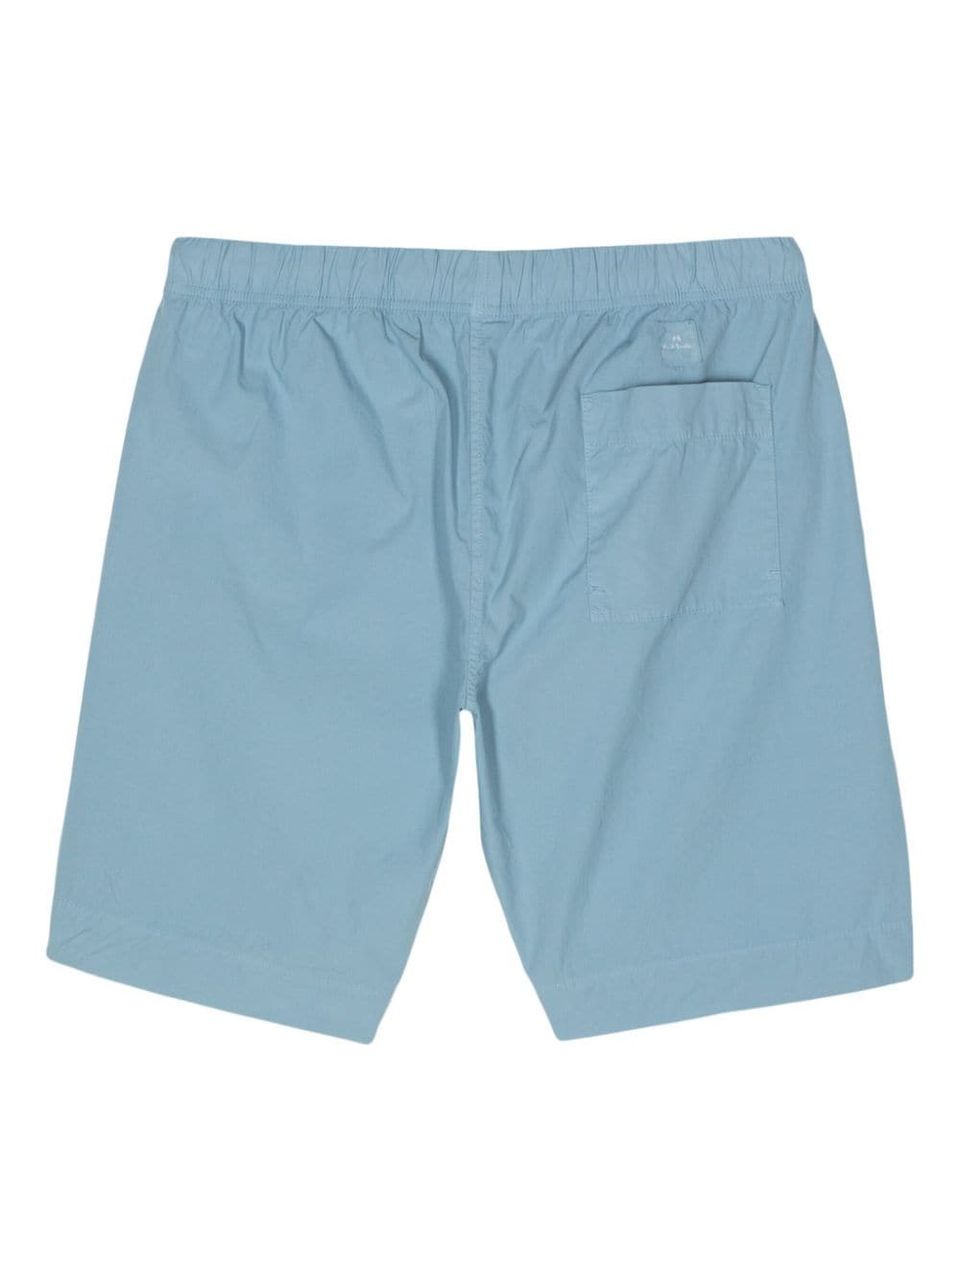 Shorts in cotone con tasca applicata sul retro